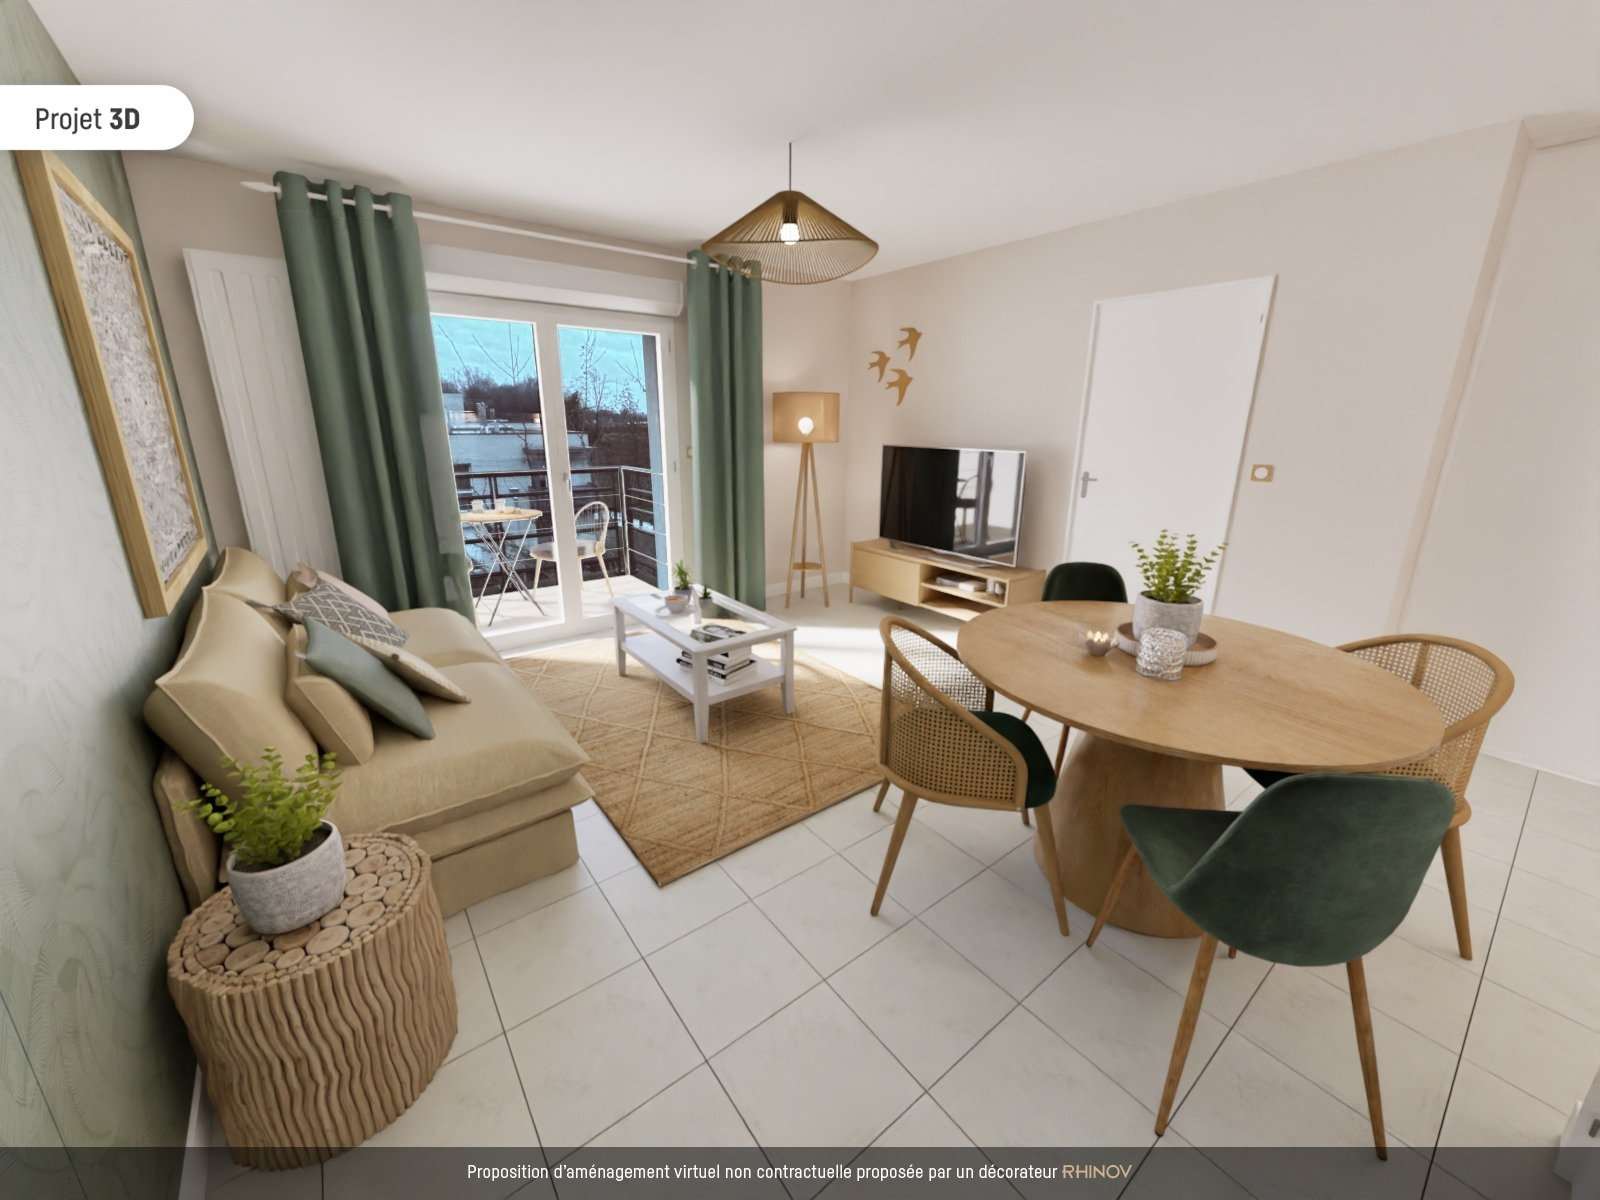 En exclusivité - A vendre - Appartement T2 de 3993 m2 à DOUAI (59500) (2 pièces, 40 m²) Waziers